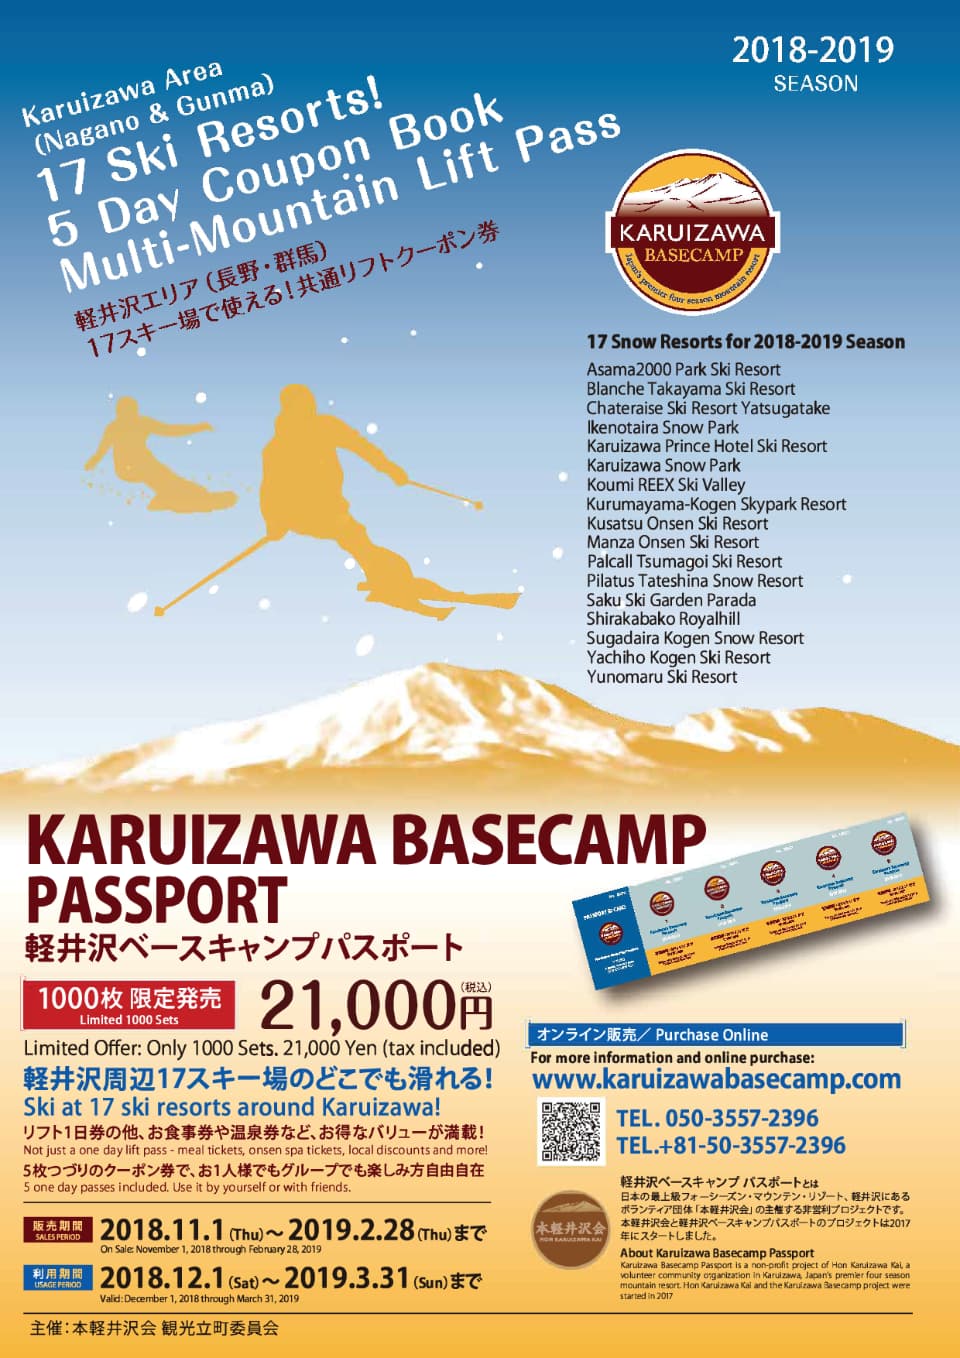 軽井沢ベースキャンプ | Karuizawa Basecamp